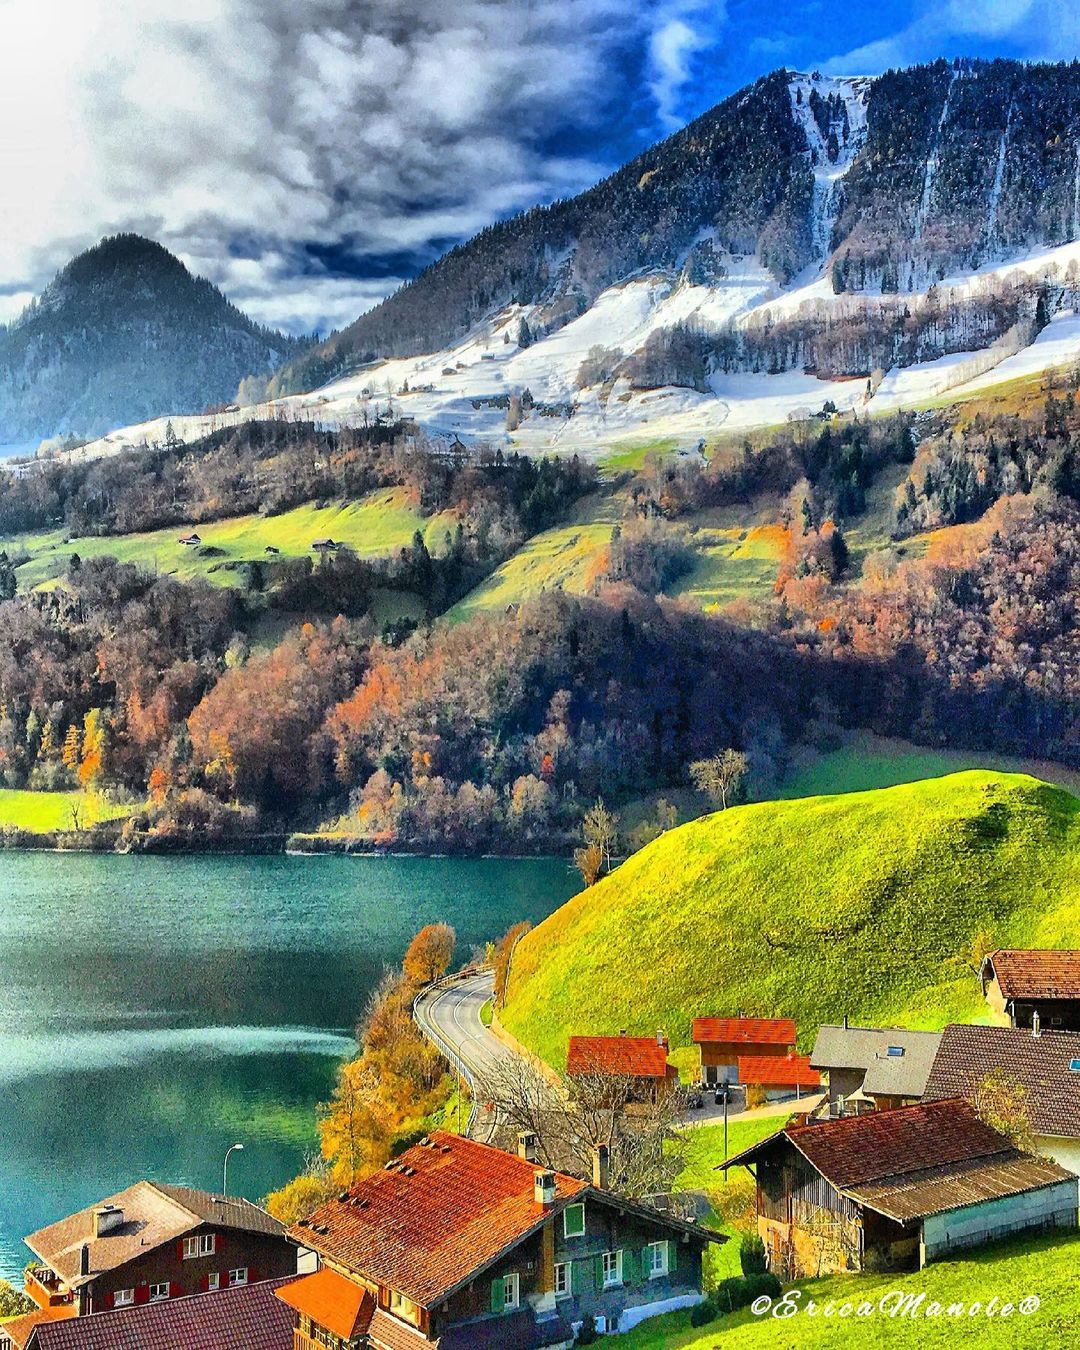 Фантастические пейзажи планеты Земля на снимках тревел-фотографа Эрика, чтобы, Читать, подписчиков, более, Instagram, делится, работами, Своими, пейзажи, городские, природные, красивые, самые, запечатлеть, Швейцарии, Маноле, путешествует, ландшафтов, природы